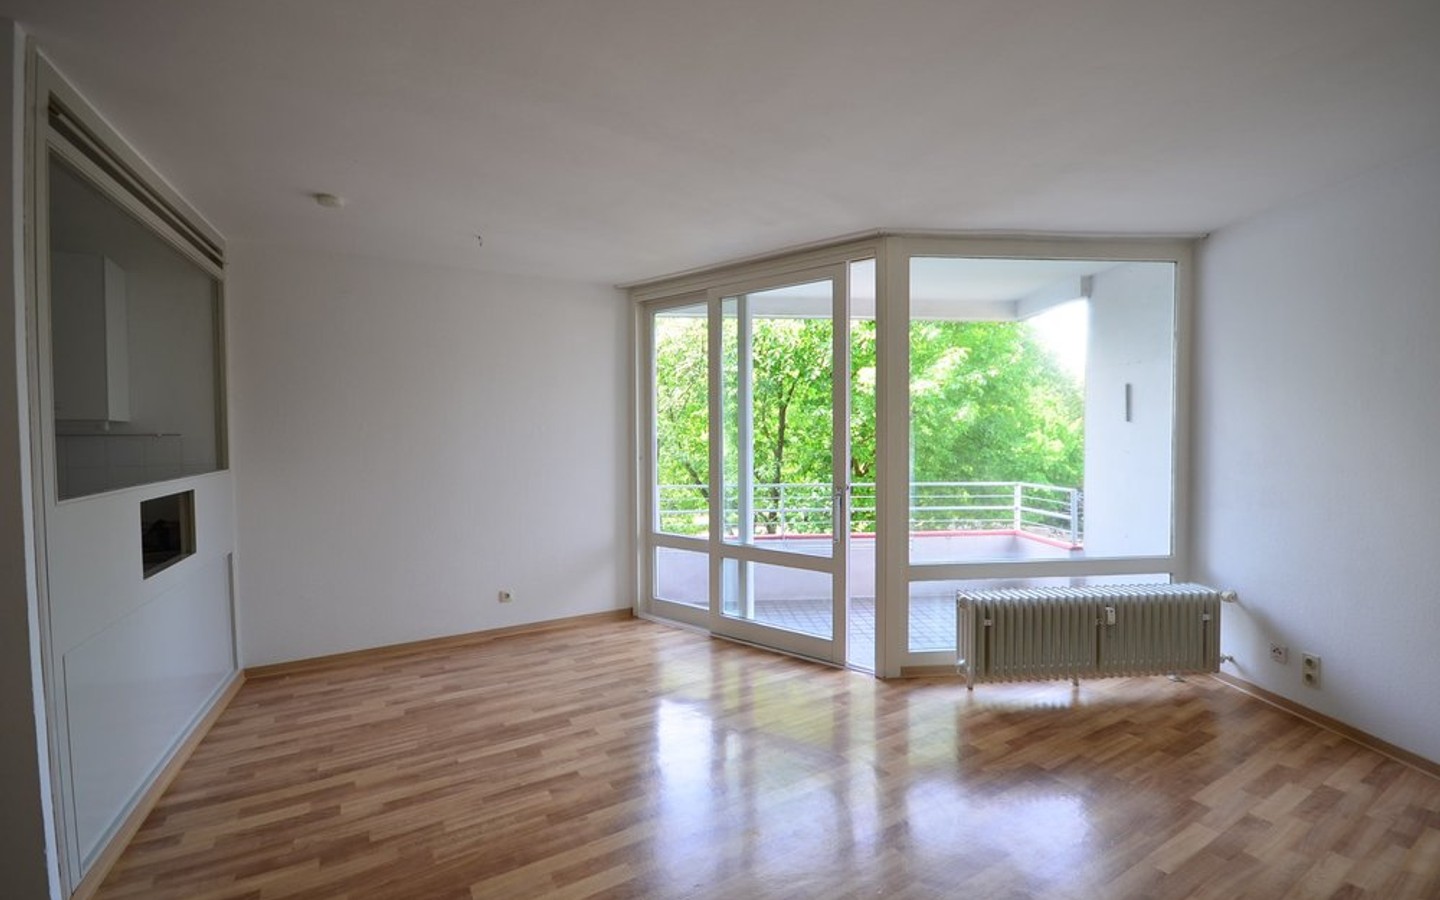 Wohnzimmer - Heidelberg-Wieblingen: 2-Zimmerwohnung mit Balkon und gelungener Raumaufteilung